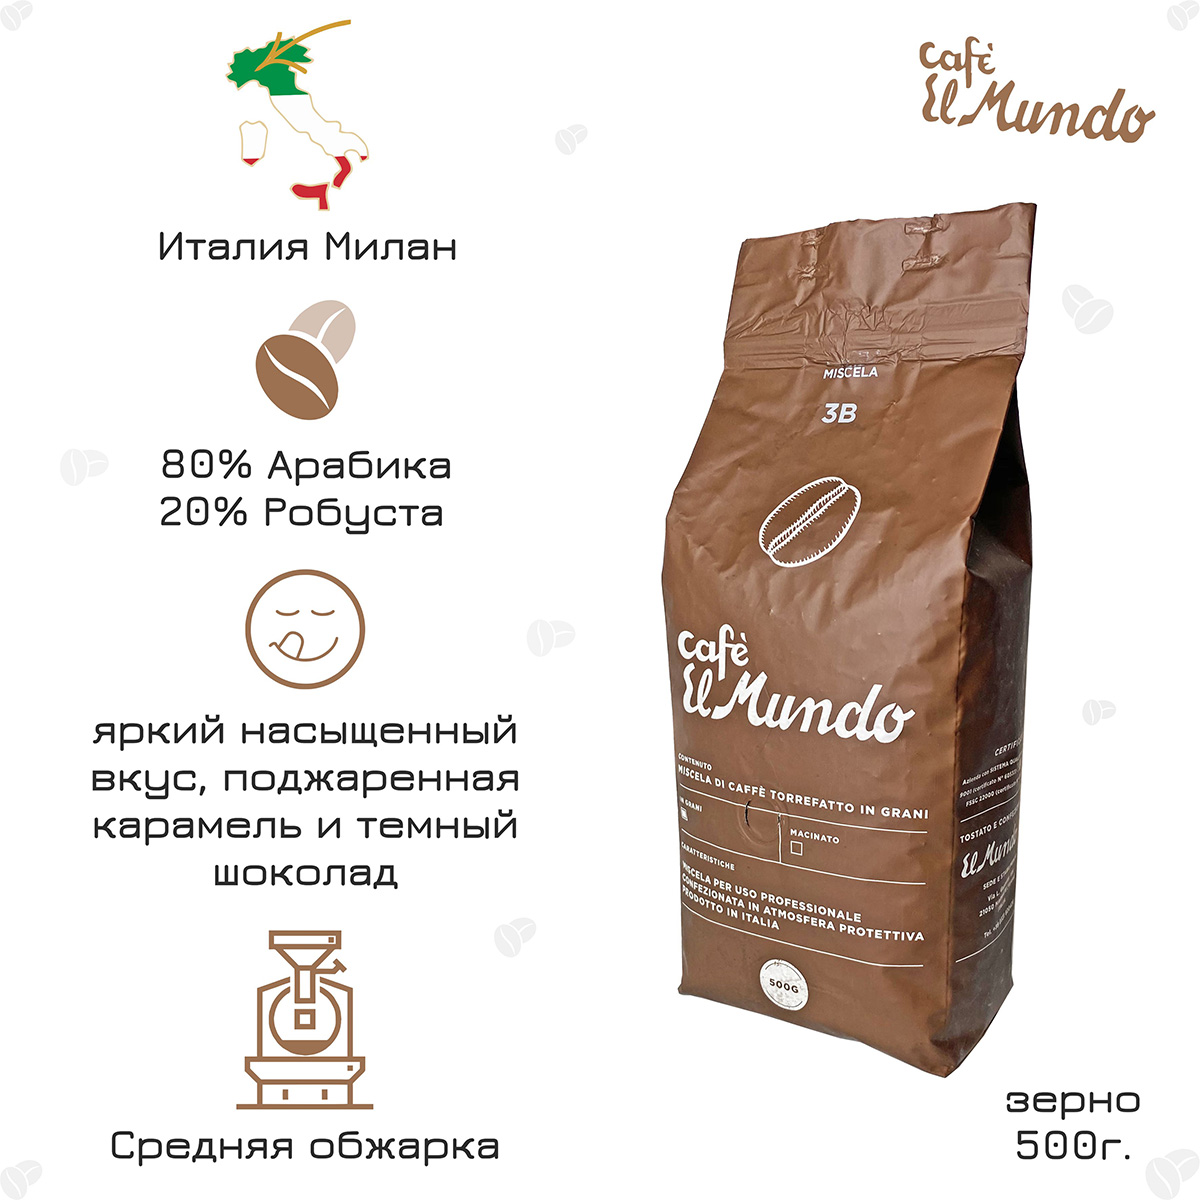 кофе Милан ELMundo 3B Marrone 500 g.